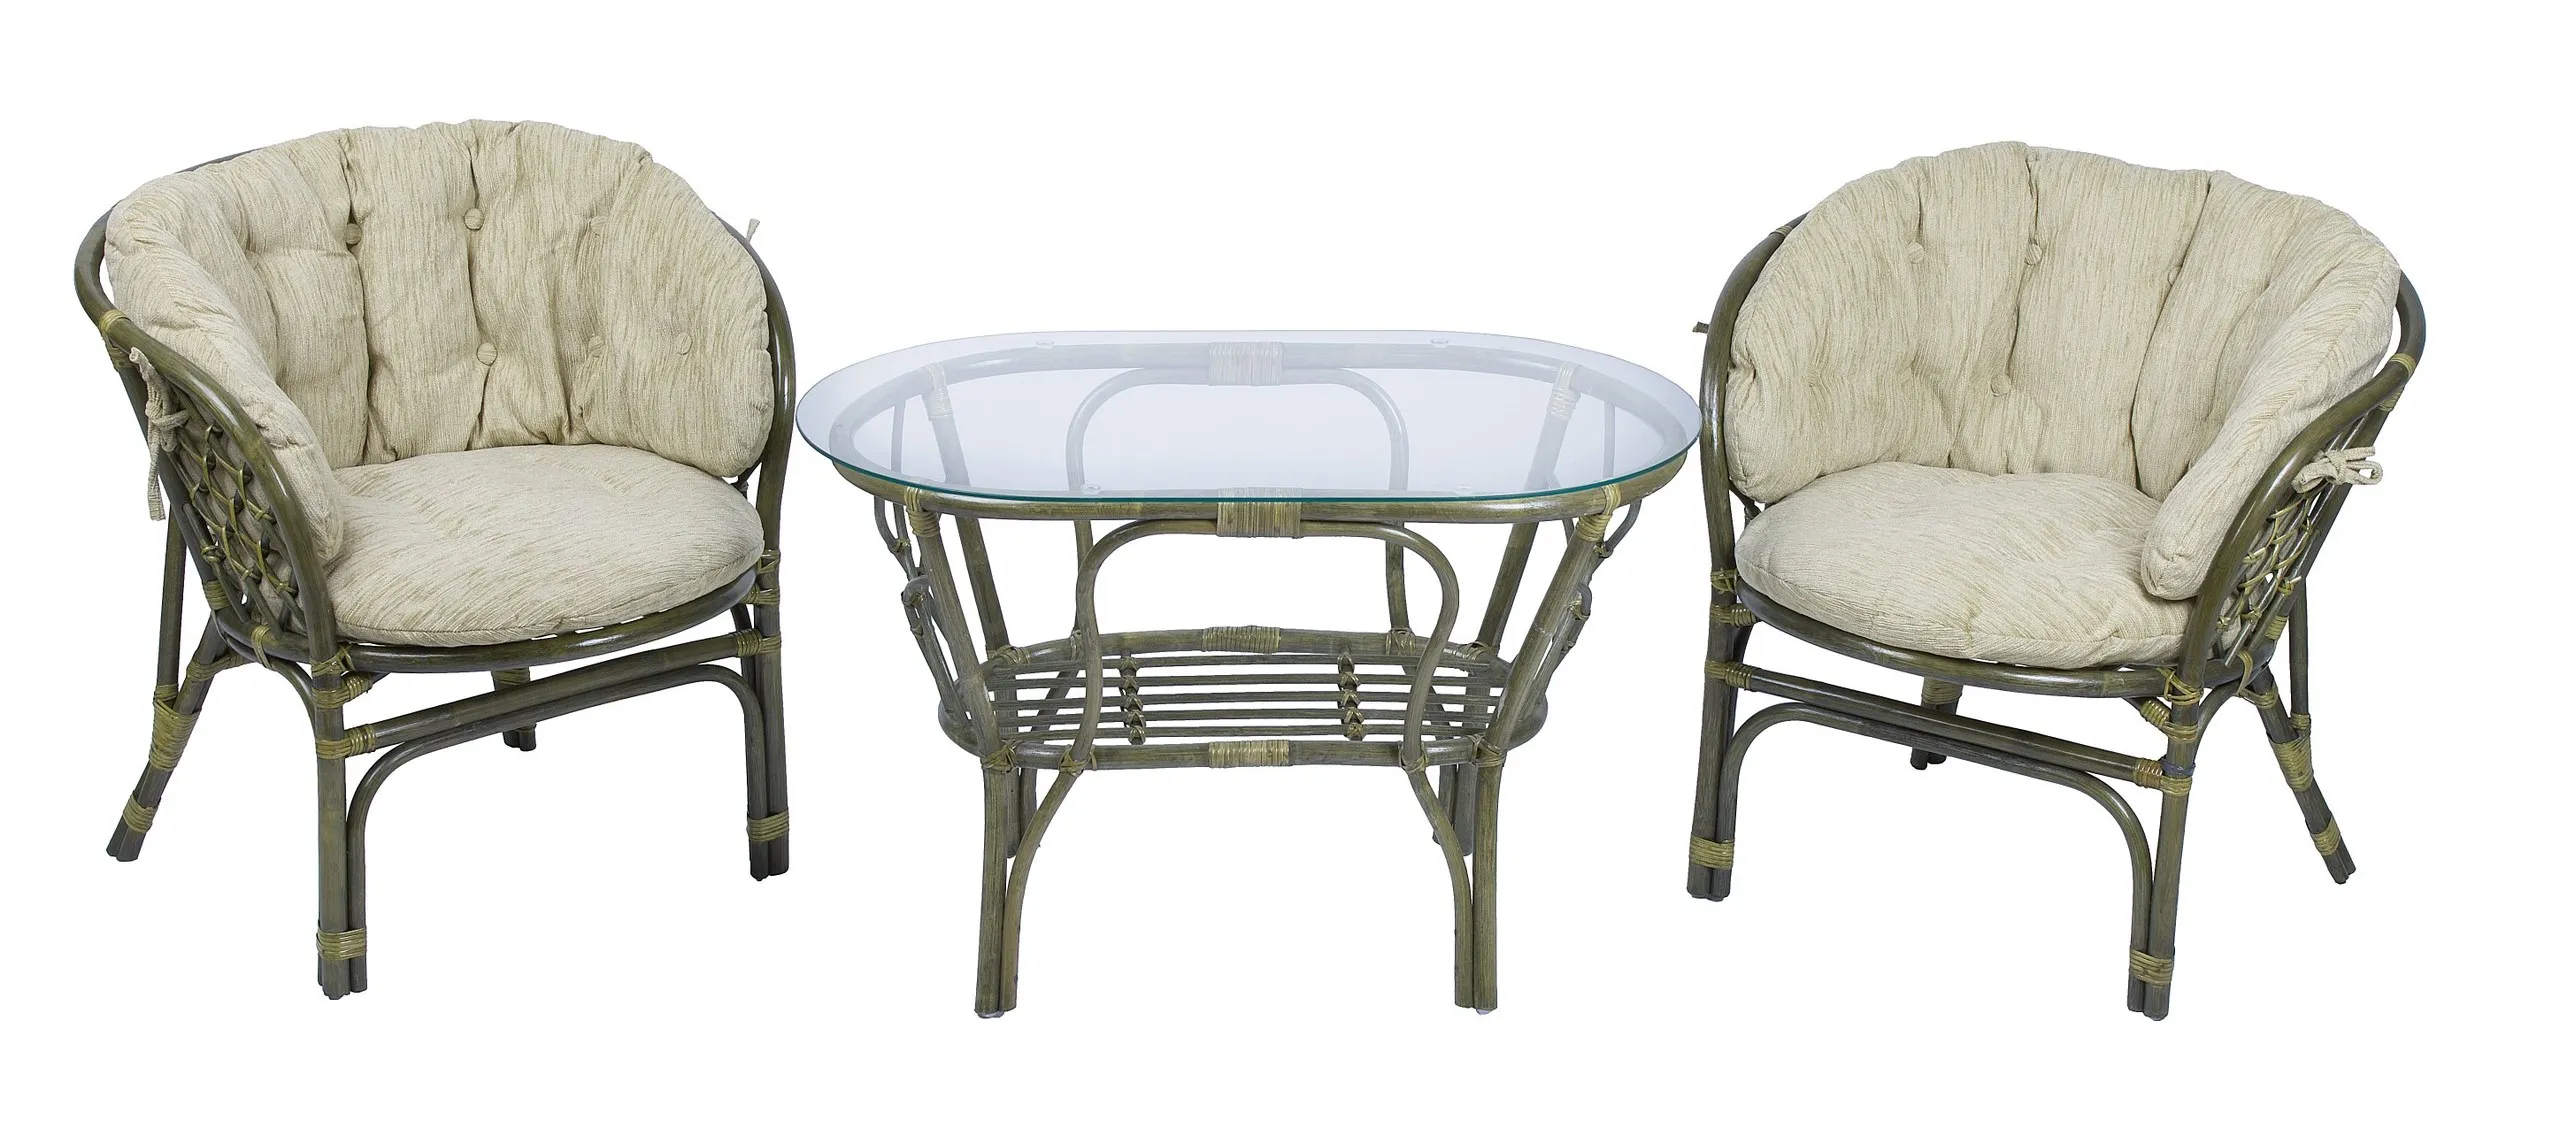 Комплект мебели из ротанга Багама дуэт с овальным столом олива (подушки шенилл полные светлые)